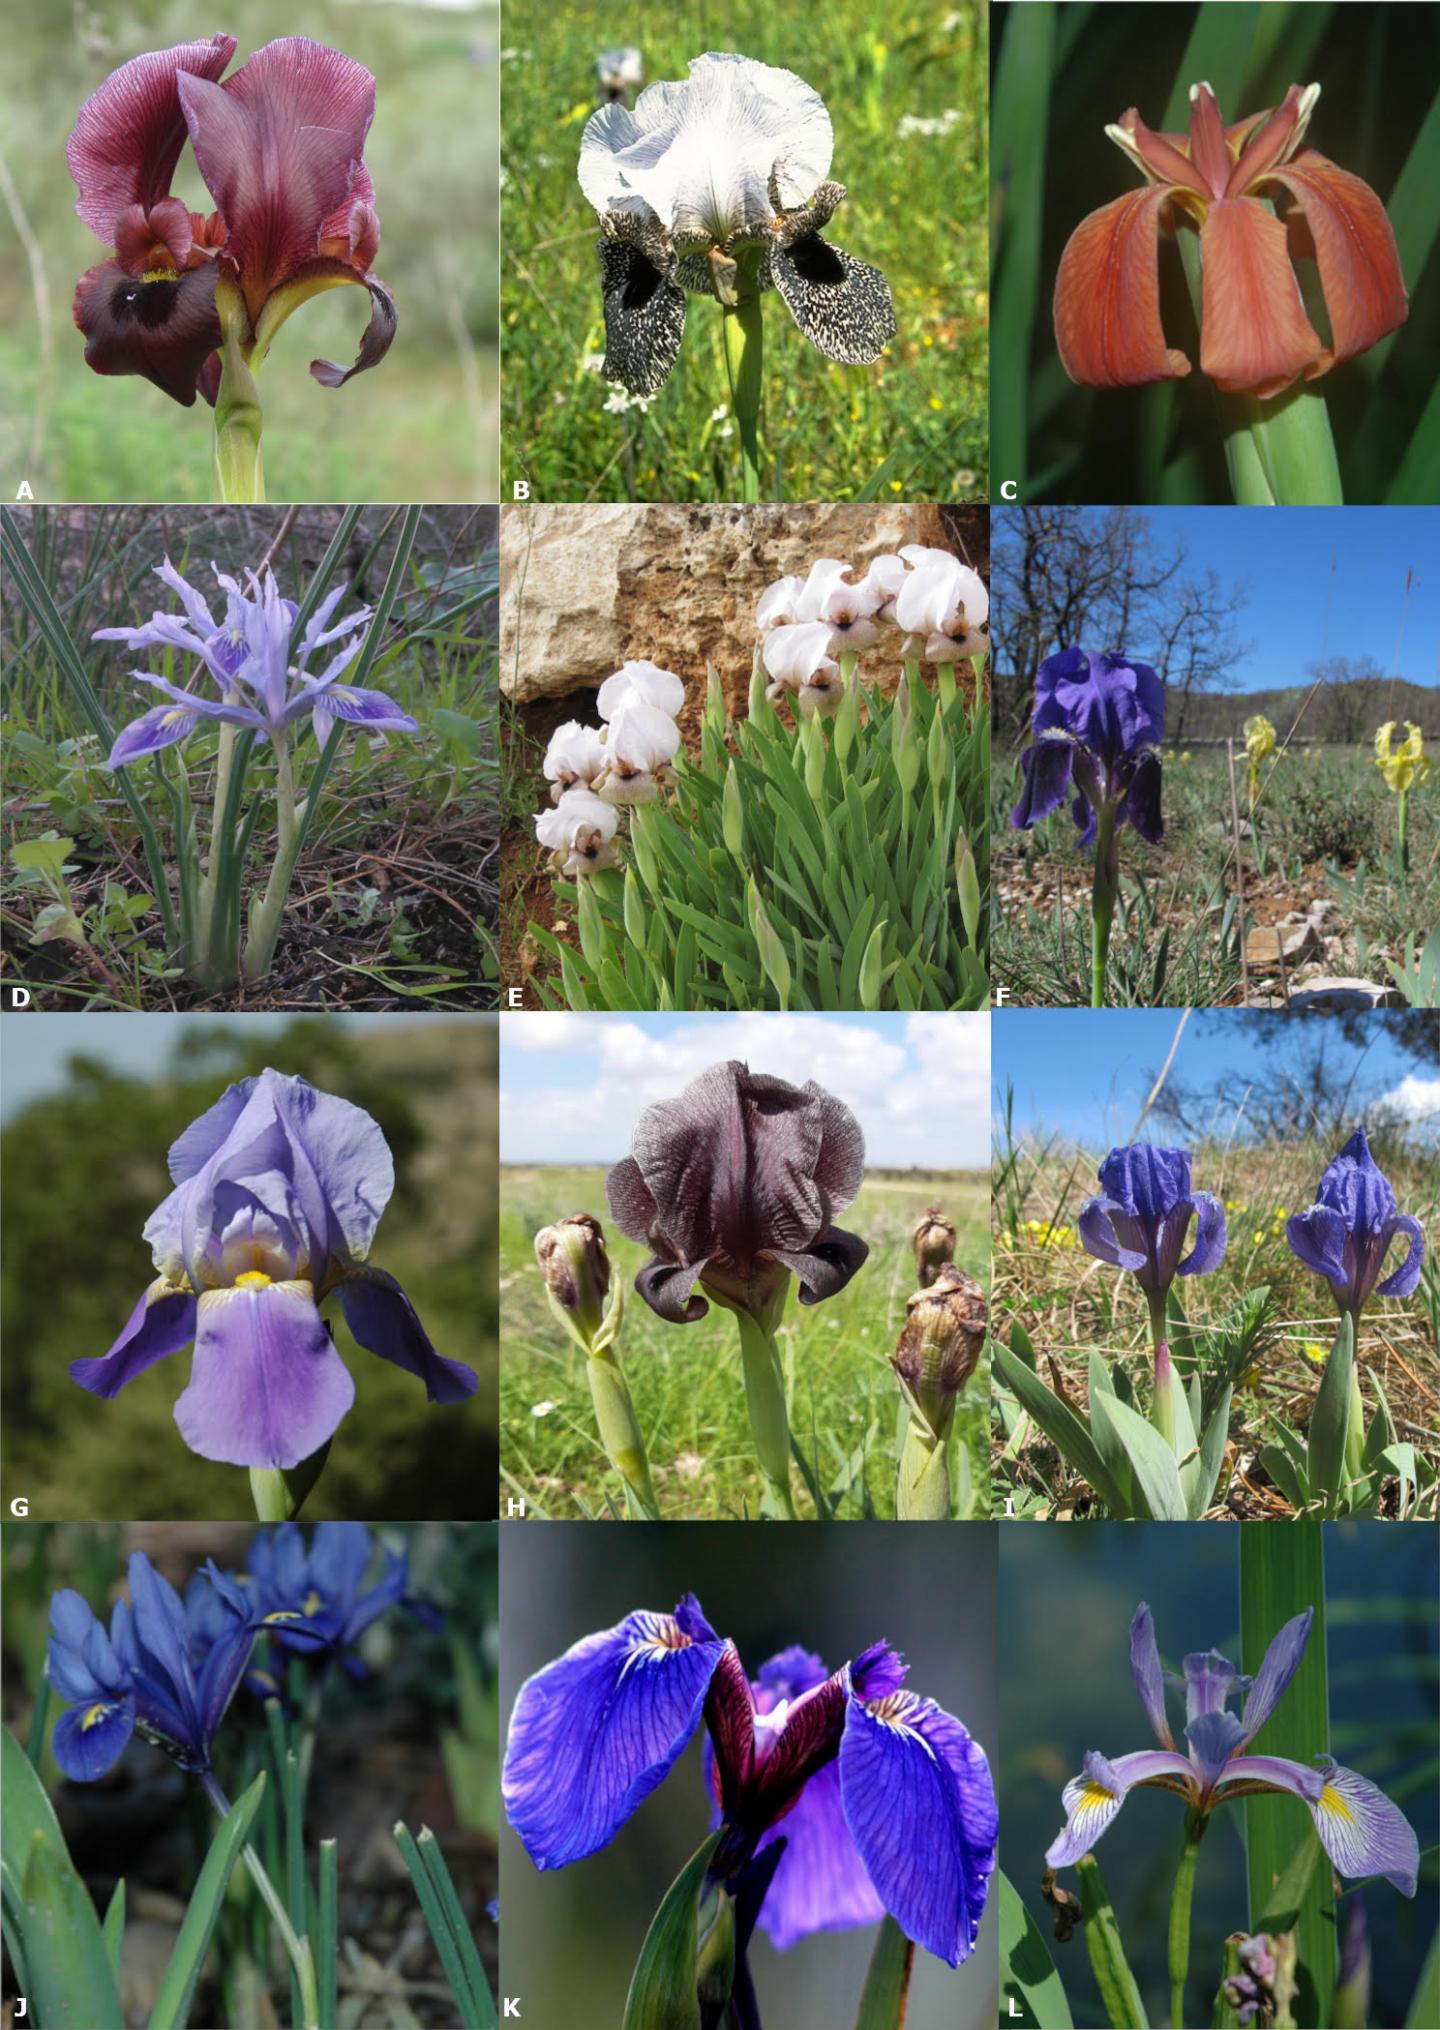 Diversity of irises